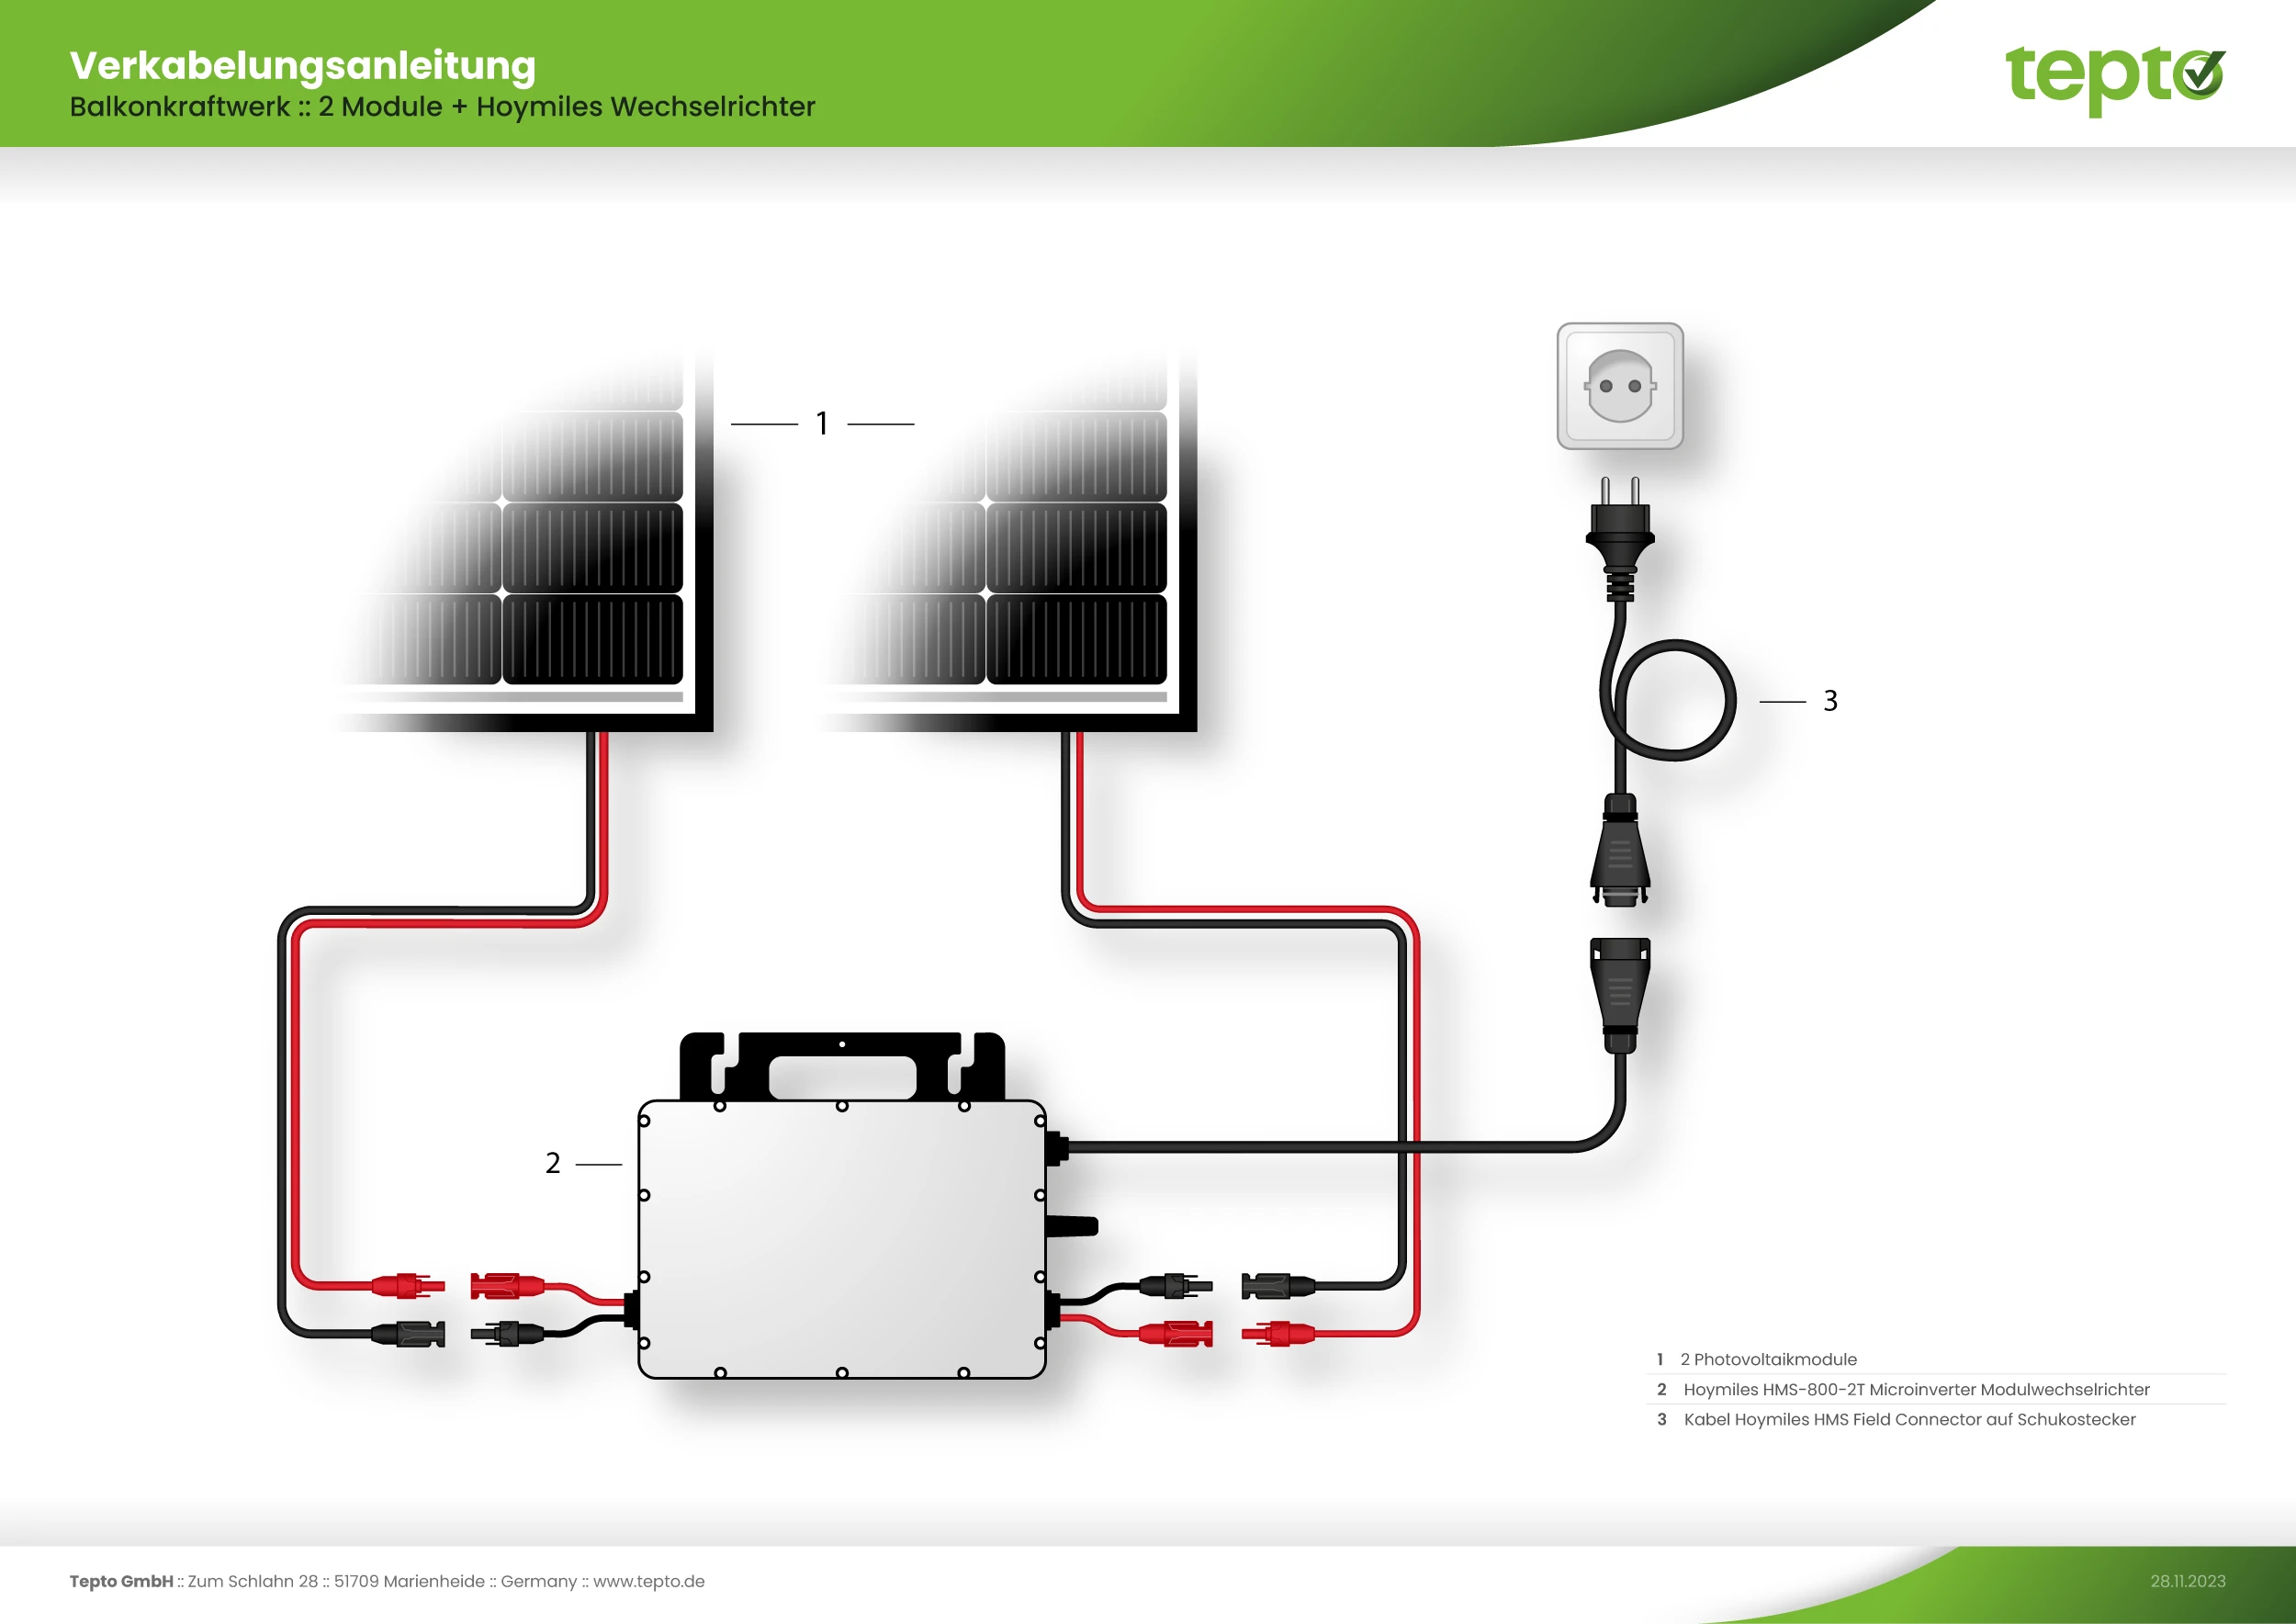 Microwechselrichter Hoymiles HM400 für PV Solar Anlage